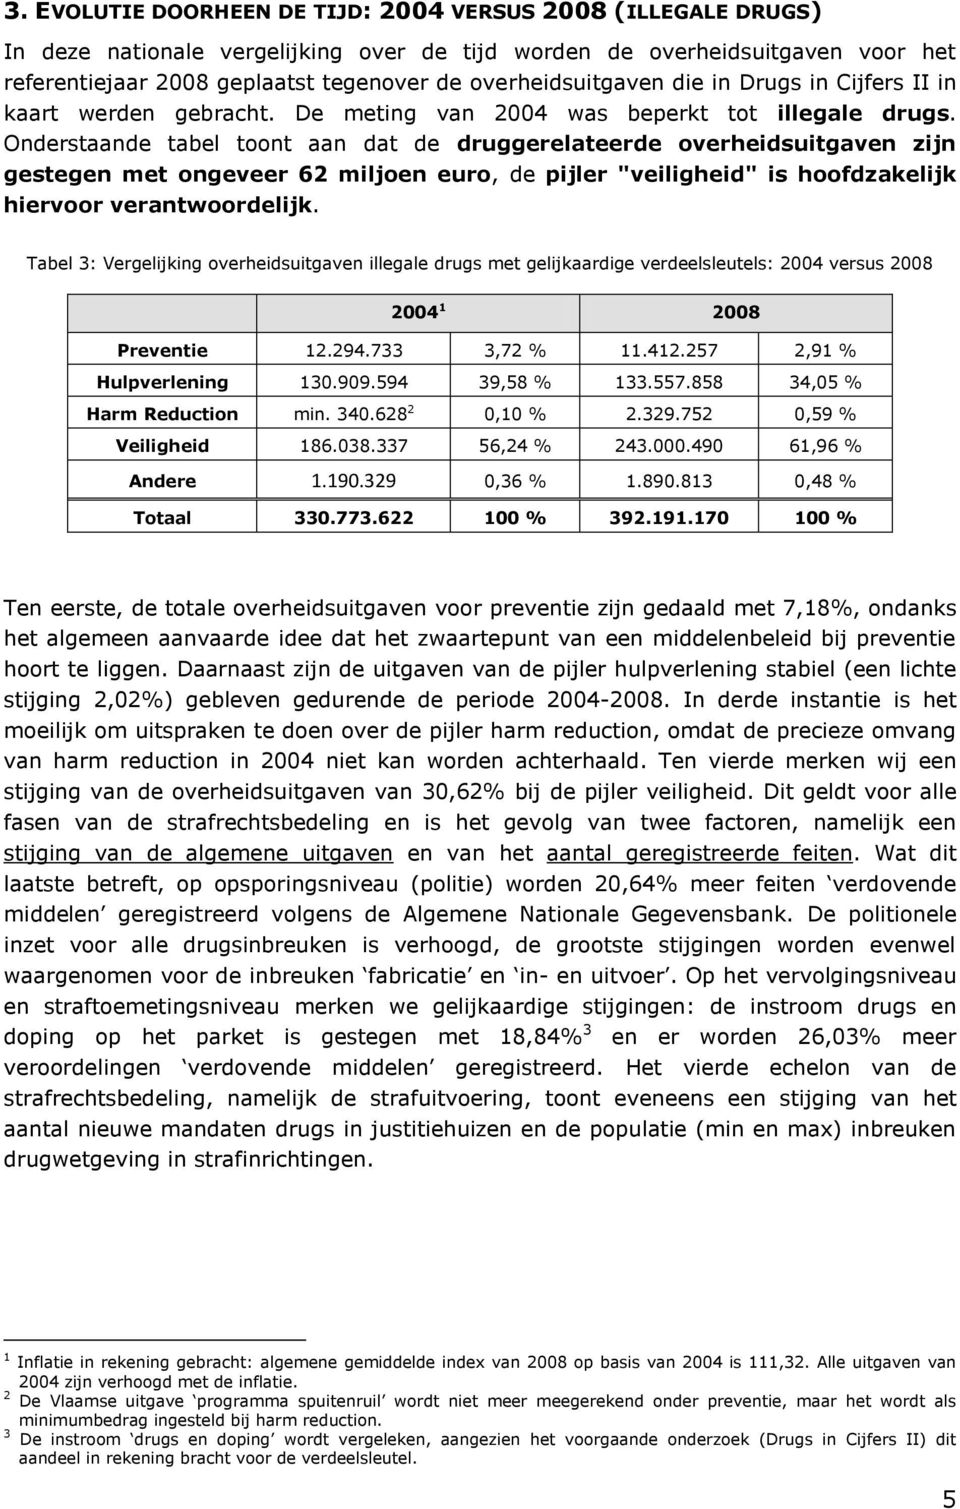 Onderstaande tabel toont aan dat de druggerelateerde overheidsuitgaven zijn gestegen met ongeveer 62 miljoen euro, de pijler "veiligheid" is hoofdzakelijk hiervoor verantwoordelijk.